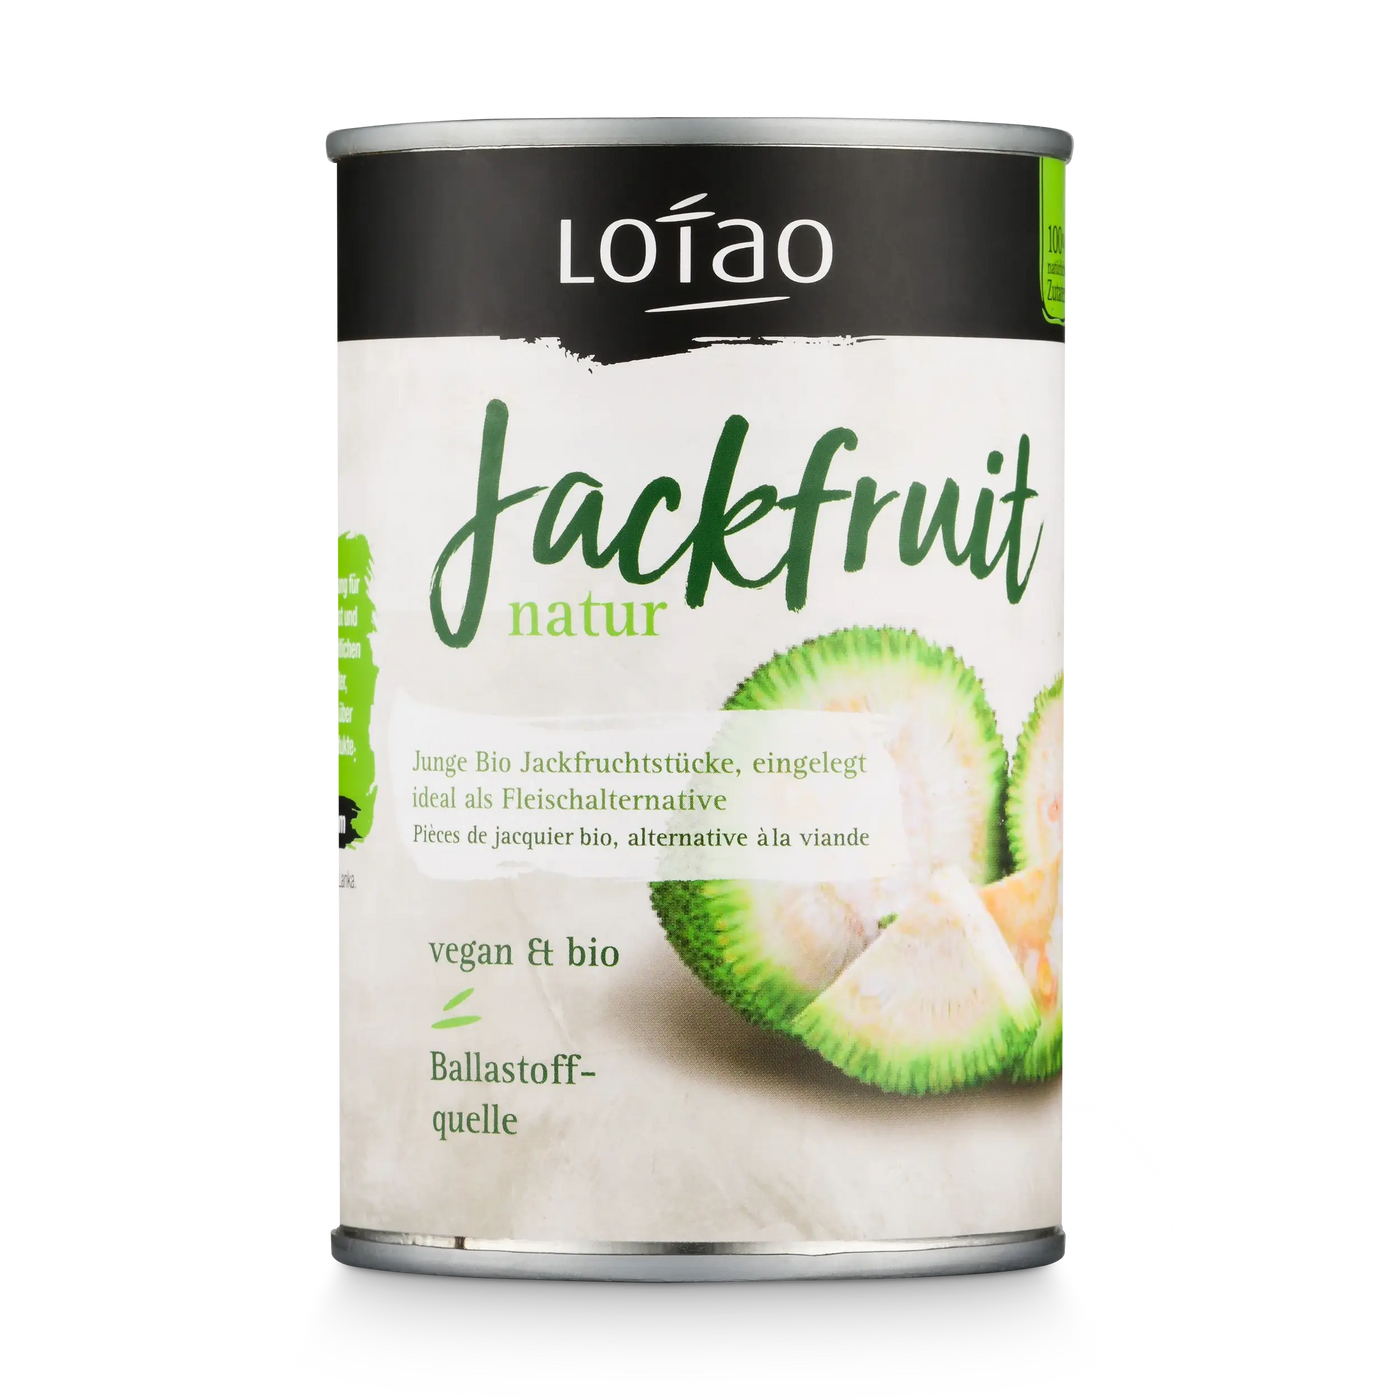 Junge Jackfruit Natur in der Dose als veganer Fleischersatz von Lotao in der EInzeldose 400g